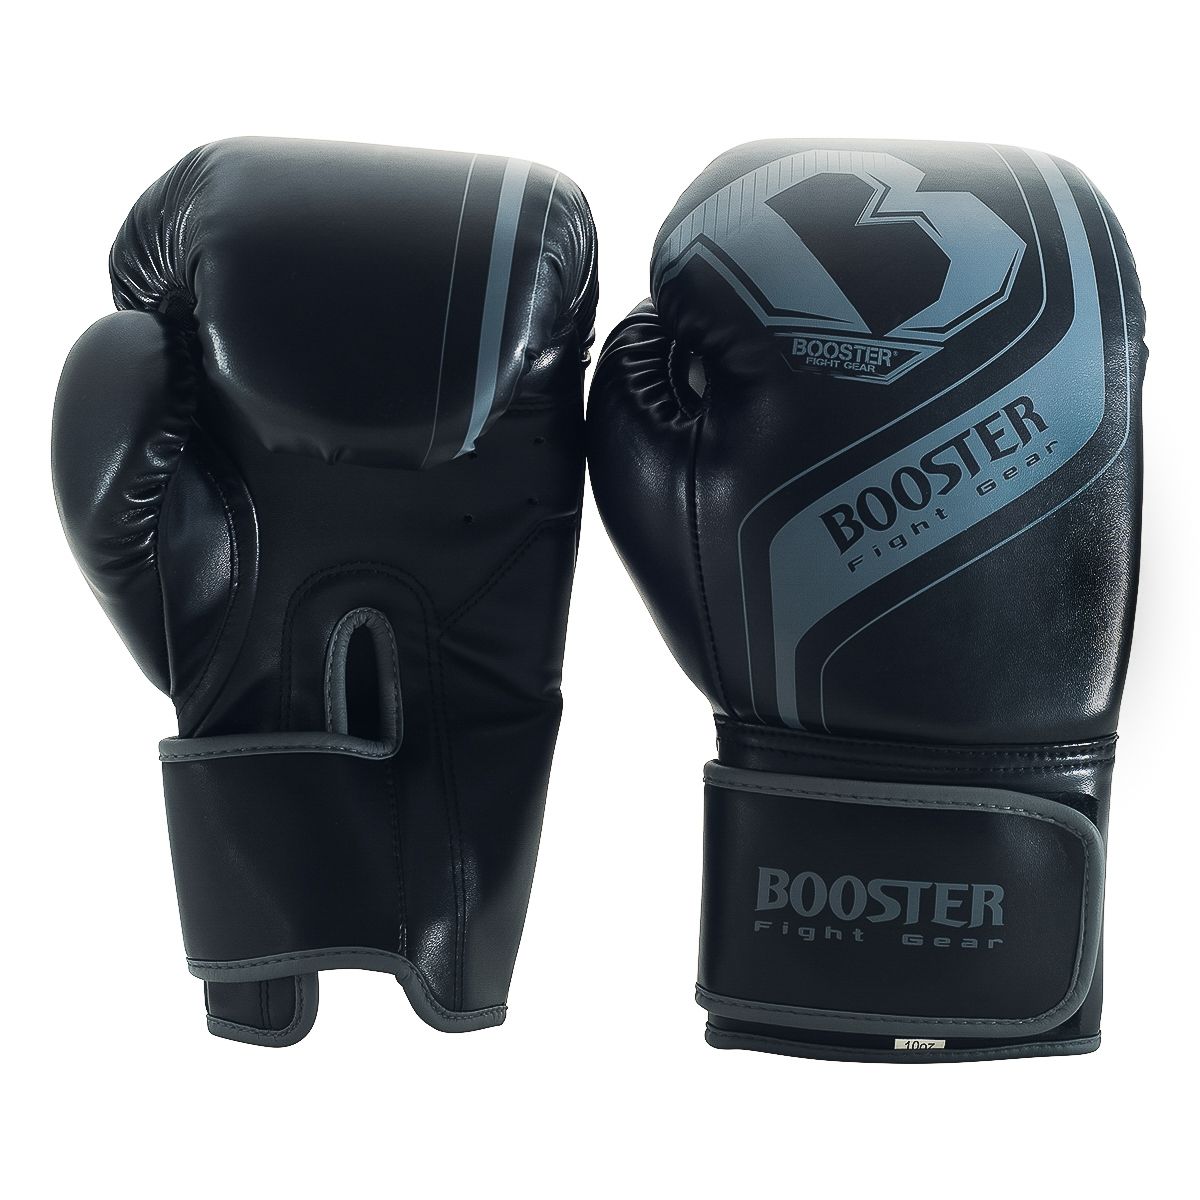 Booster Fight Gear Enforcer: Zwart-Grijze Bokshandschoenen Voor Beginners